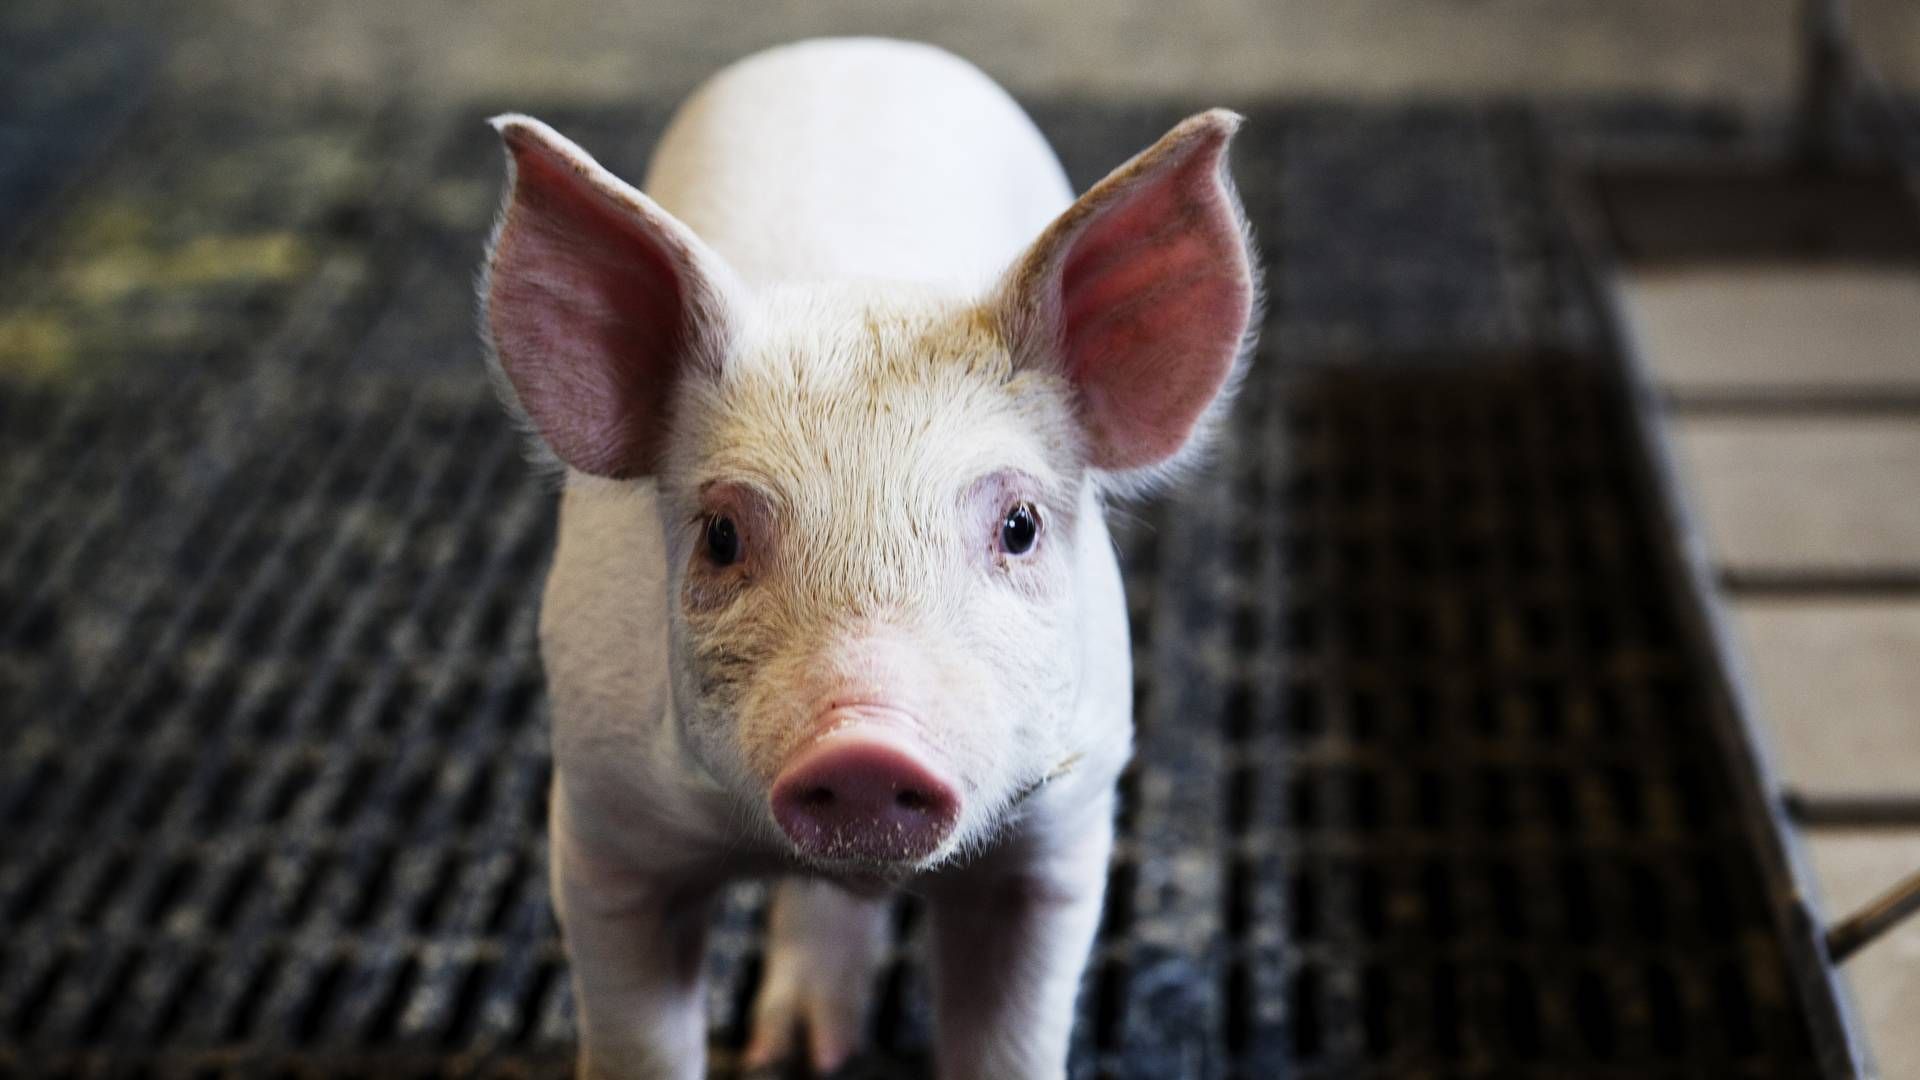 Også koncernerne Sainsbury og Morrisons har annonceret hjælpepakker til svineproducenter. | Foto: Landbrug&Fødevarer / PR